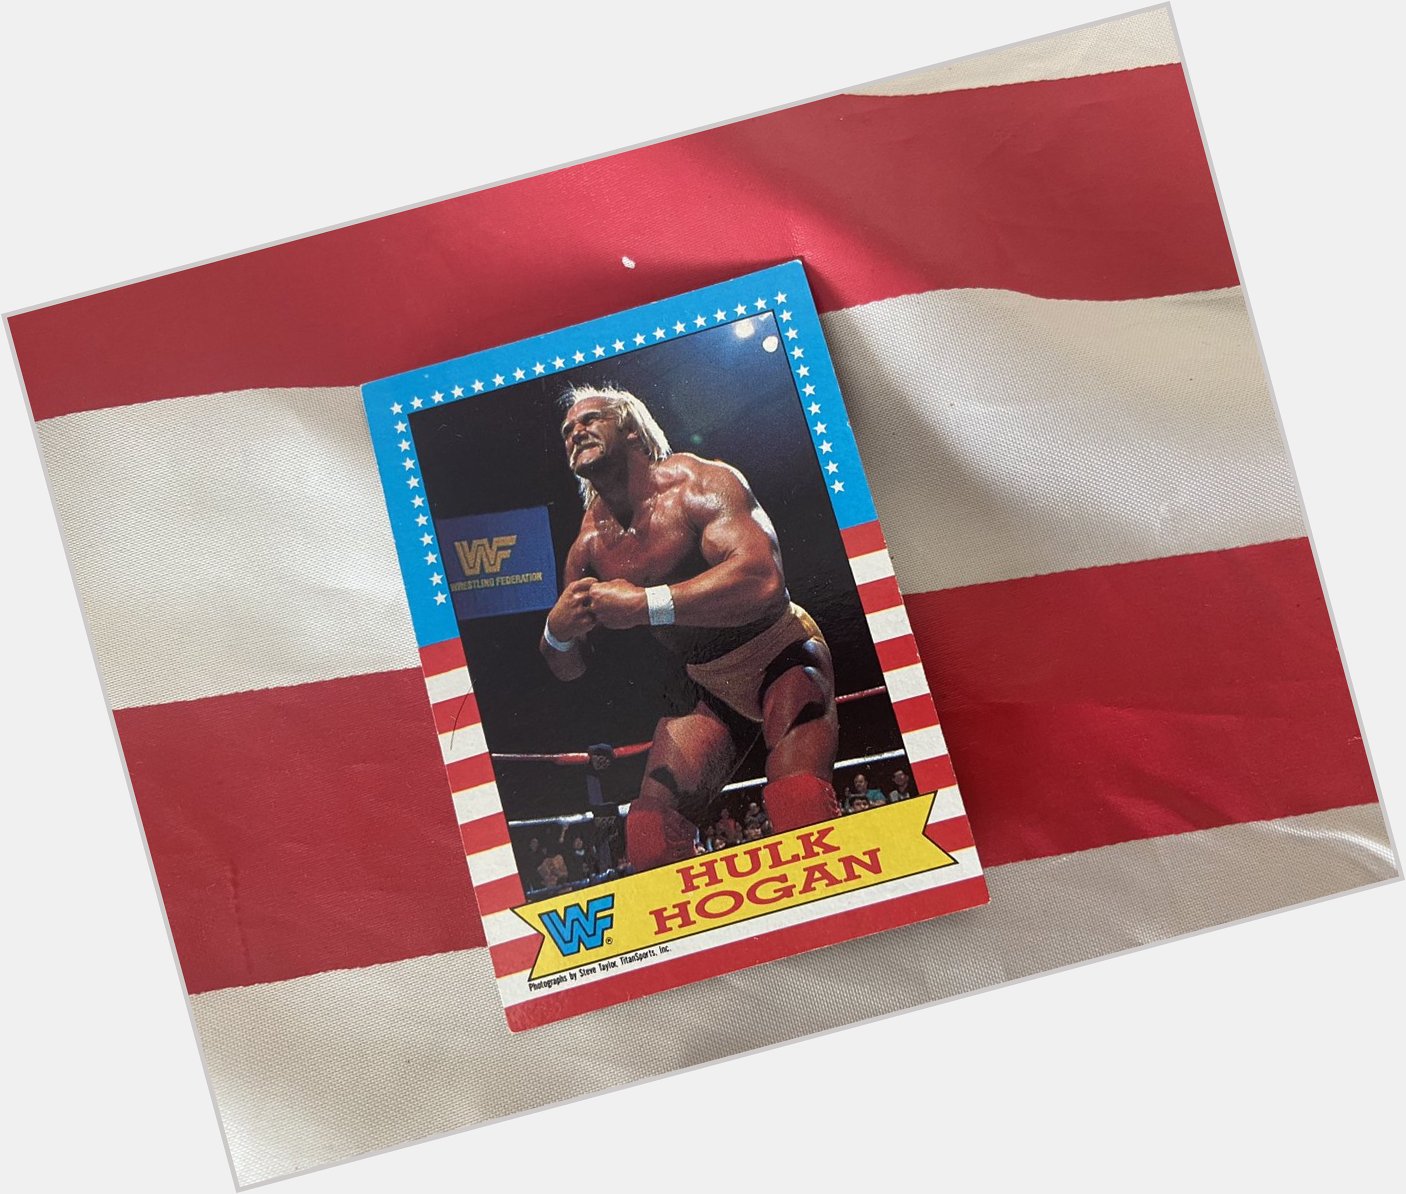 Happy birthday Hulk Hogan. 